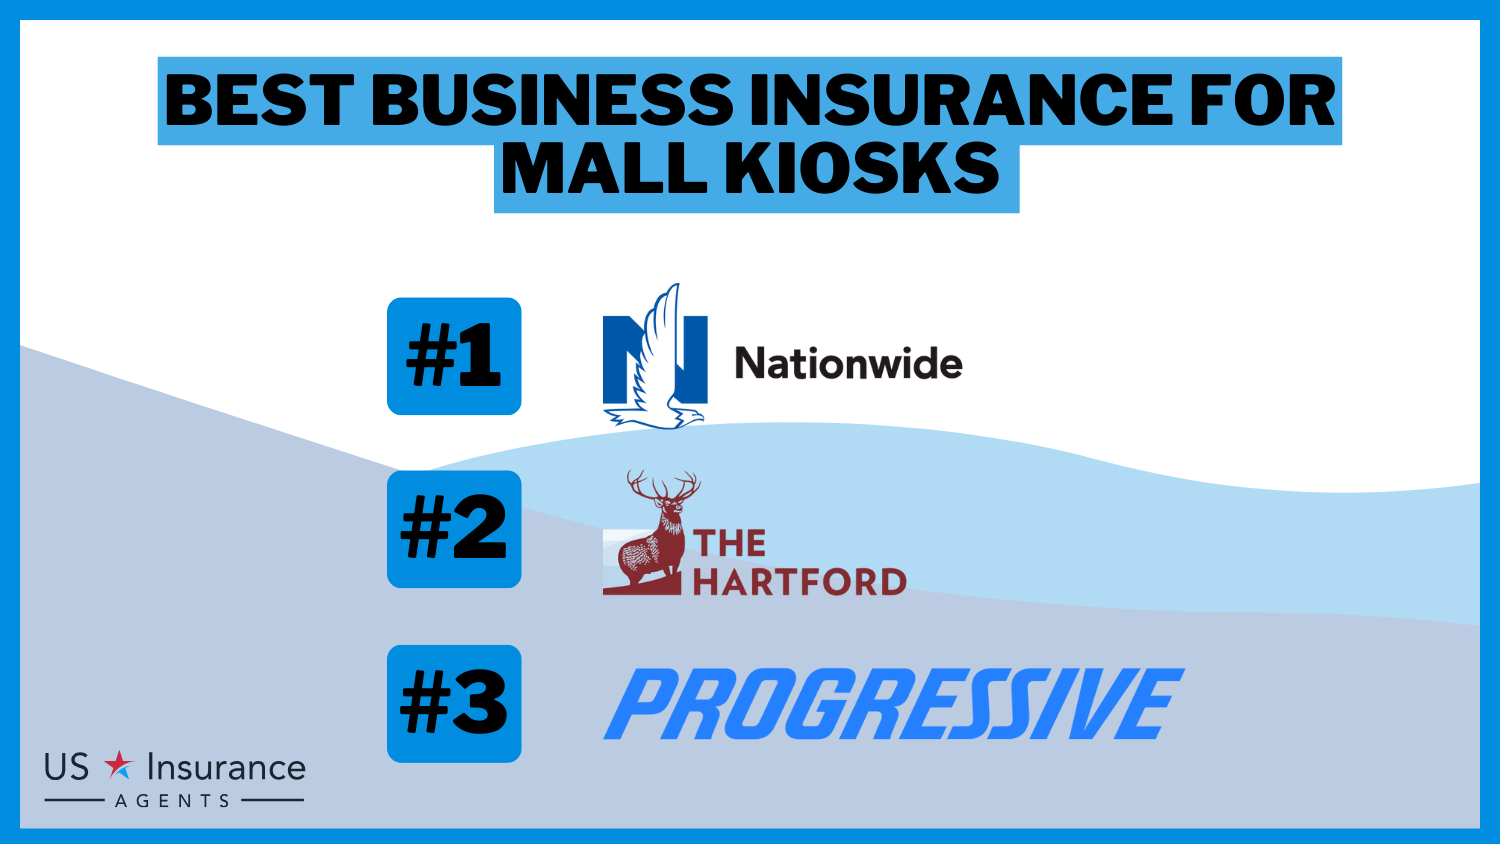 Nationwide, The Hartford, Progressive: Best Business Insurance for Mall Kiosks